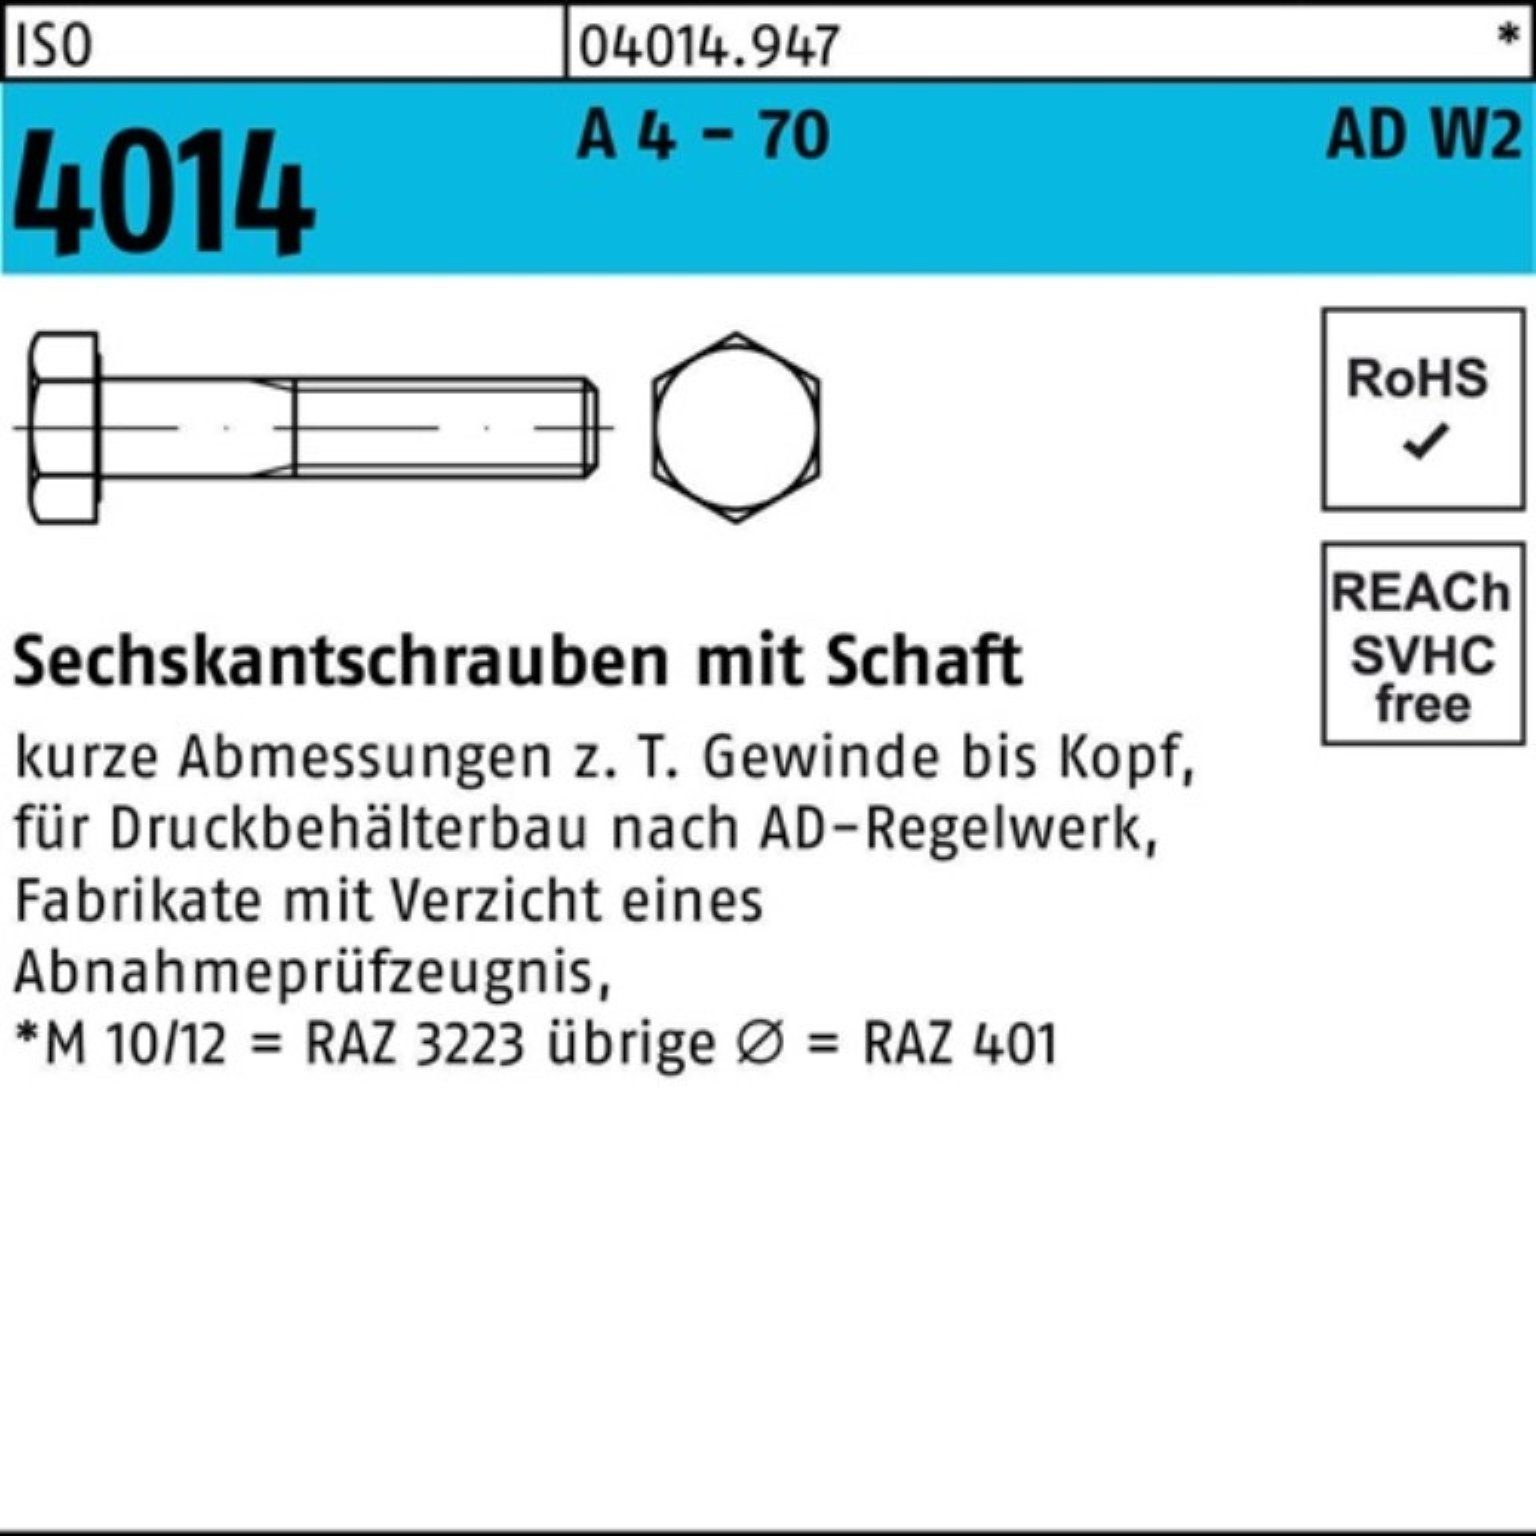 Bufab Sechskantschraube 100er Pack Sechskantschraube ISO 4014 Schaft M16x 170 A 4 - 70 AD-W2 1